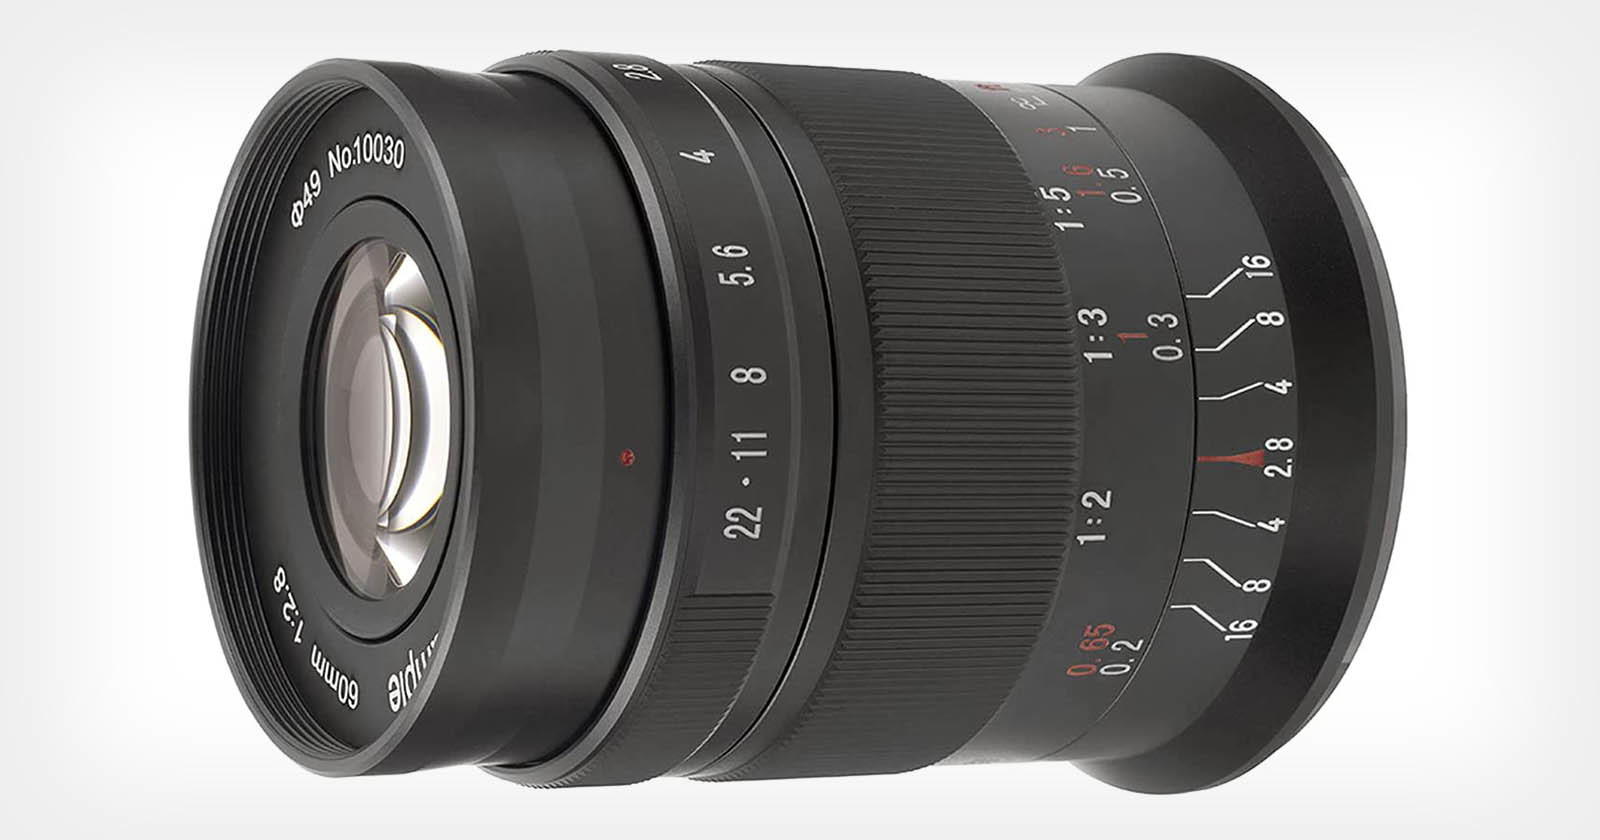  7artisans 60mm macro aps-c review good lens 